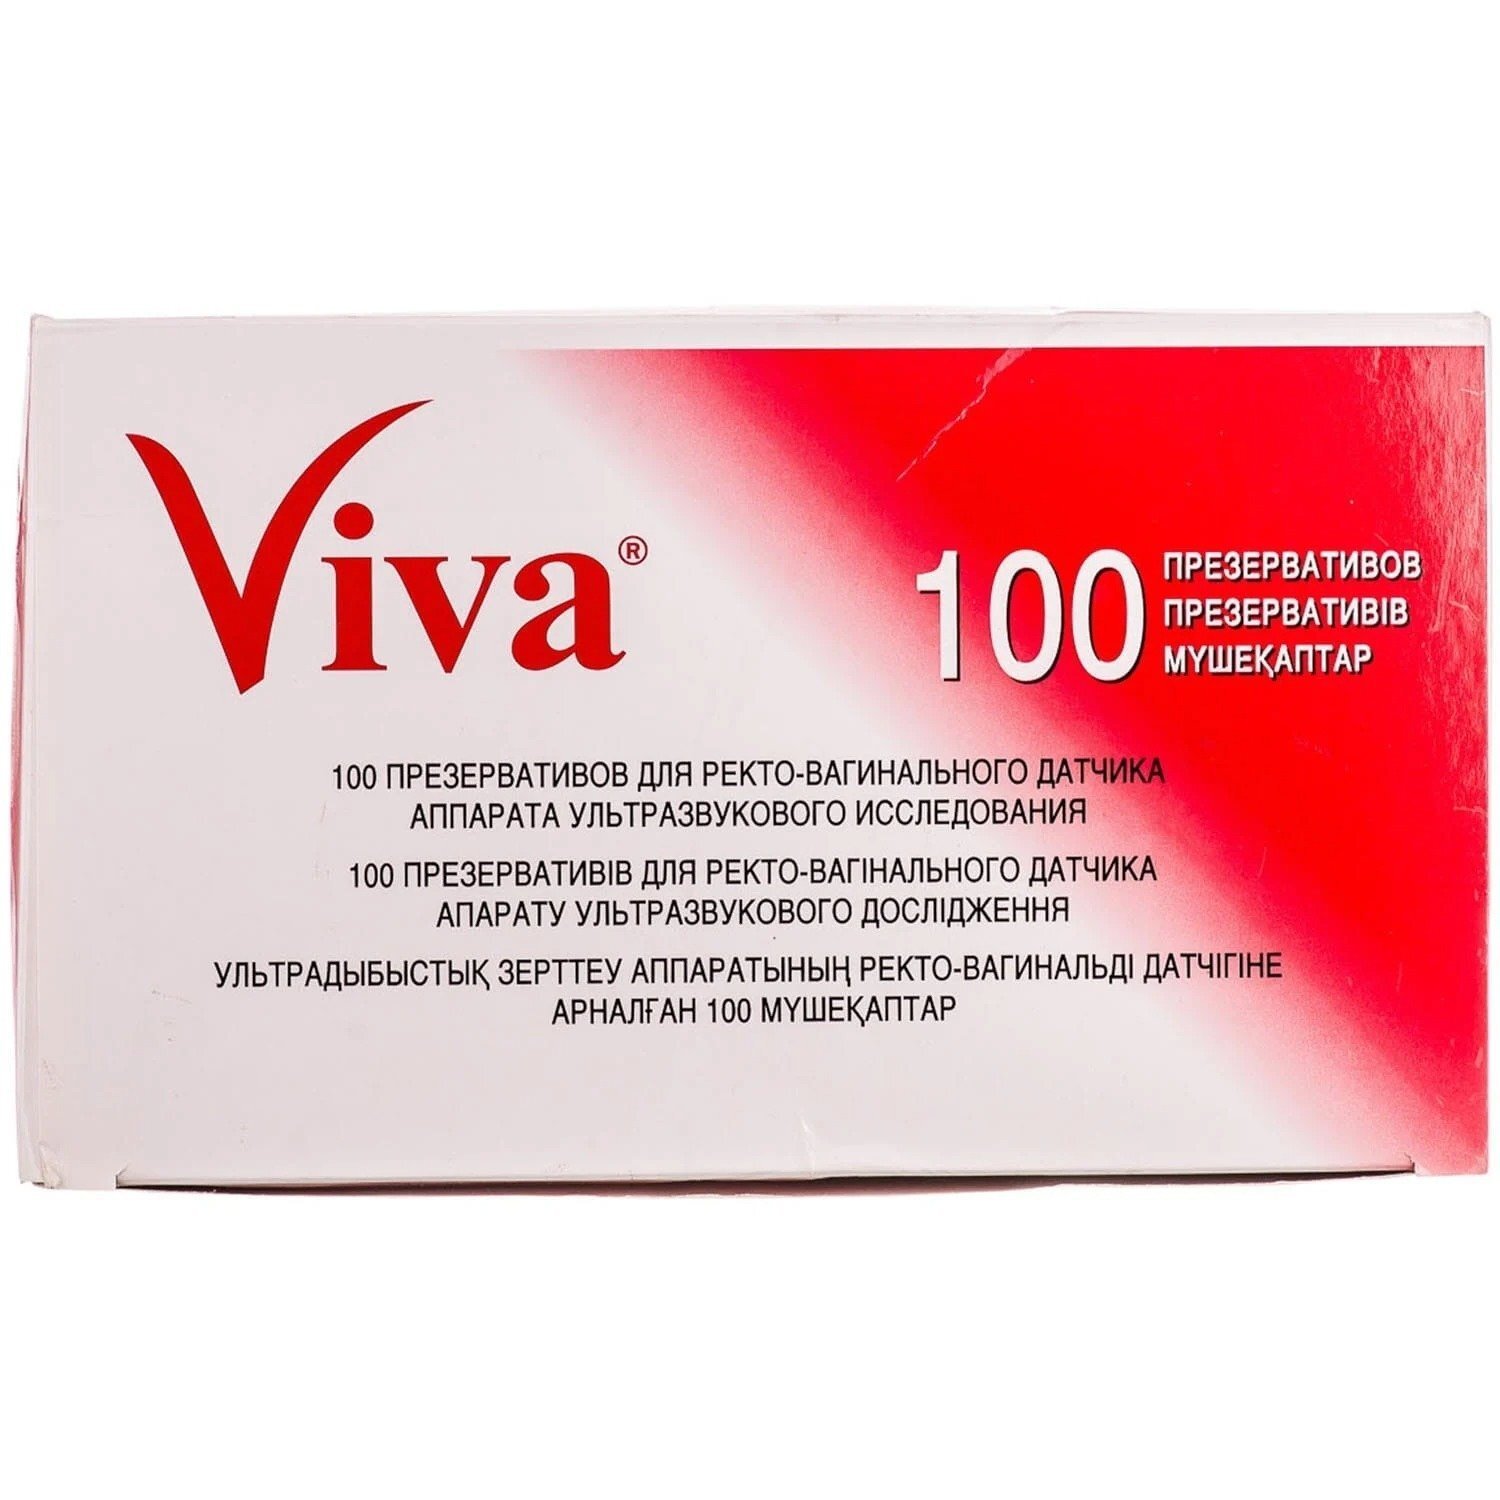 Презерватив VIVA для УЗИ №100 фото 